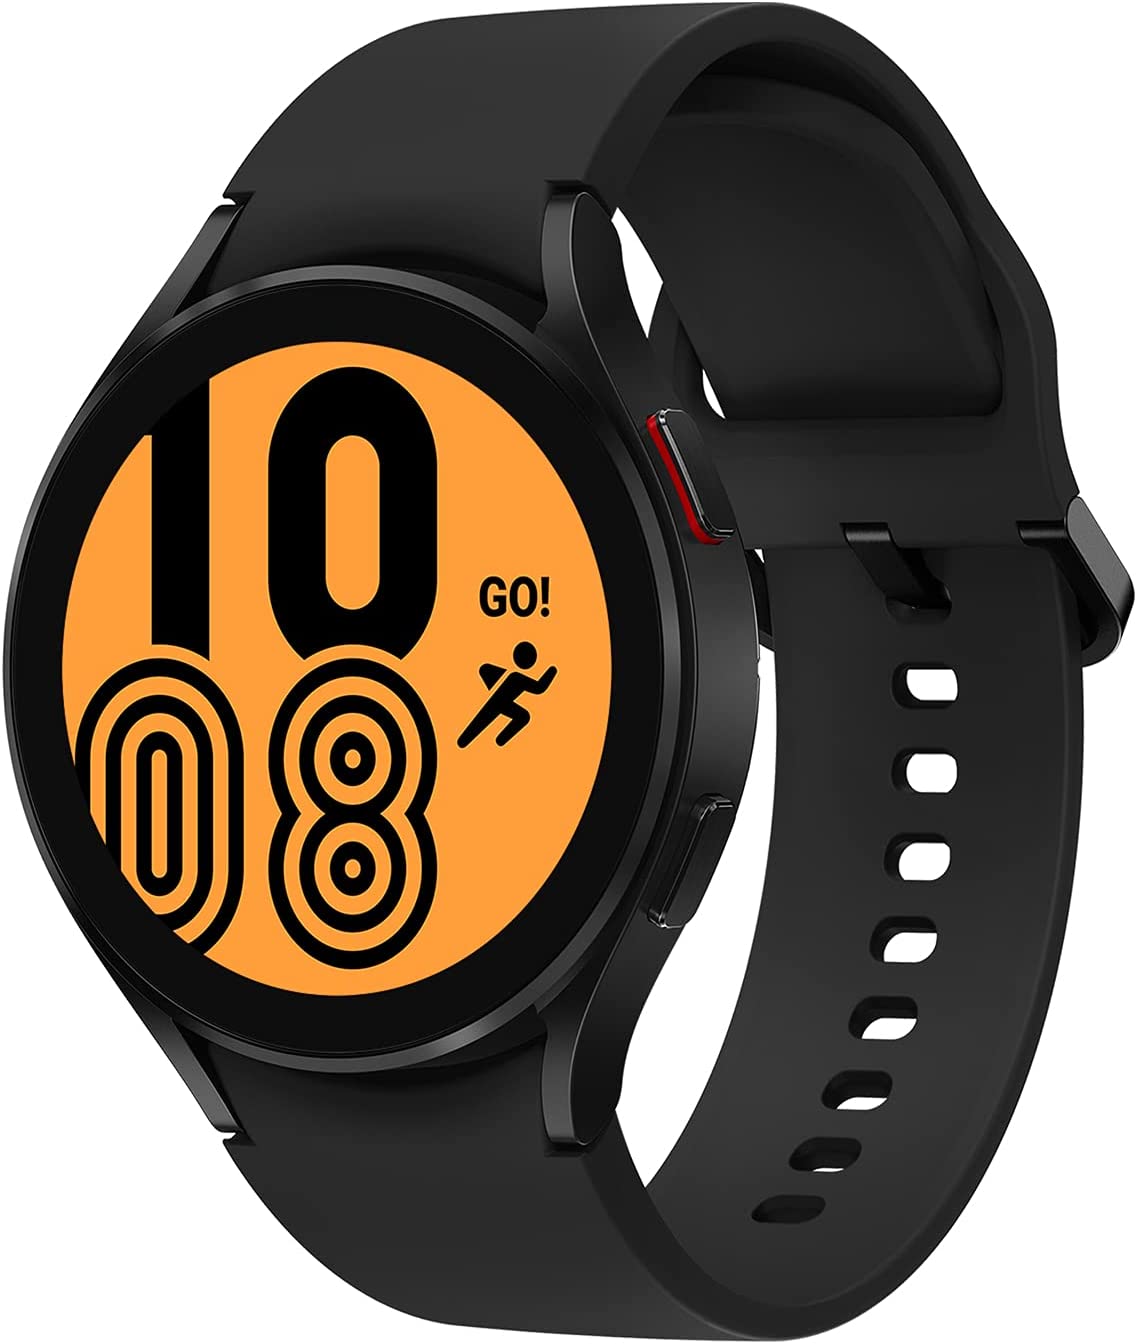 Samsung Galaxy Watch4 LTE 44mm Orologio Smartwatch, Monitoraggio Salute, Fitness Tracker, Batteria lunga durata, Bluetooth, Nero, 2021 [Versione Italiana] emporio mp 3